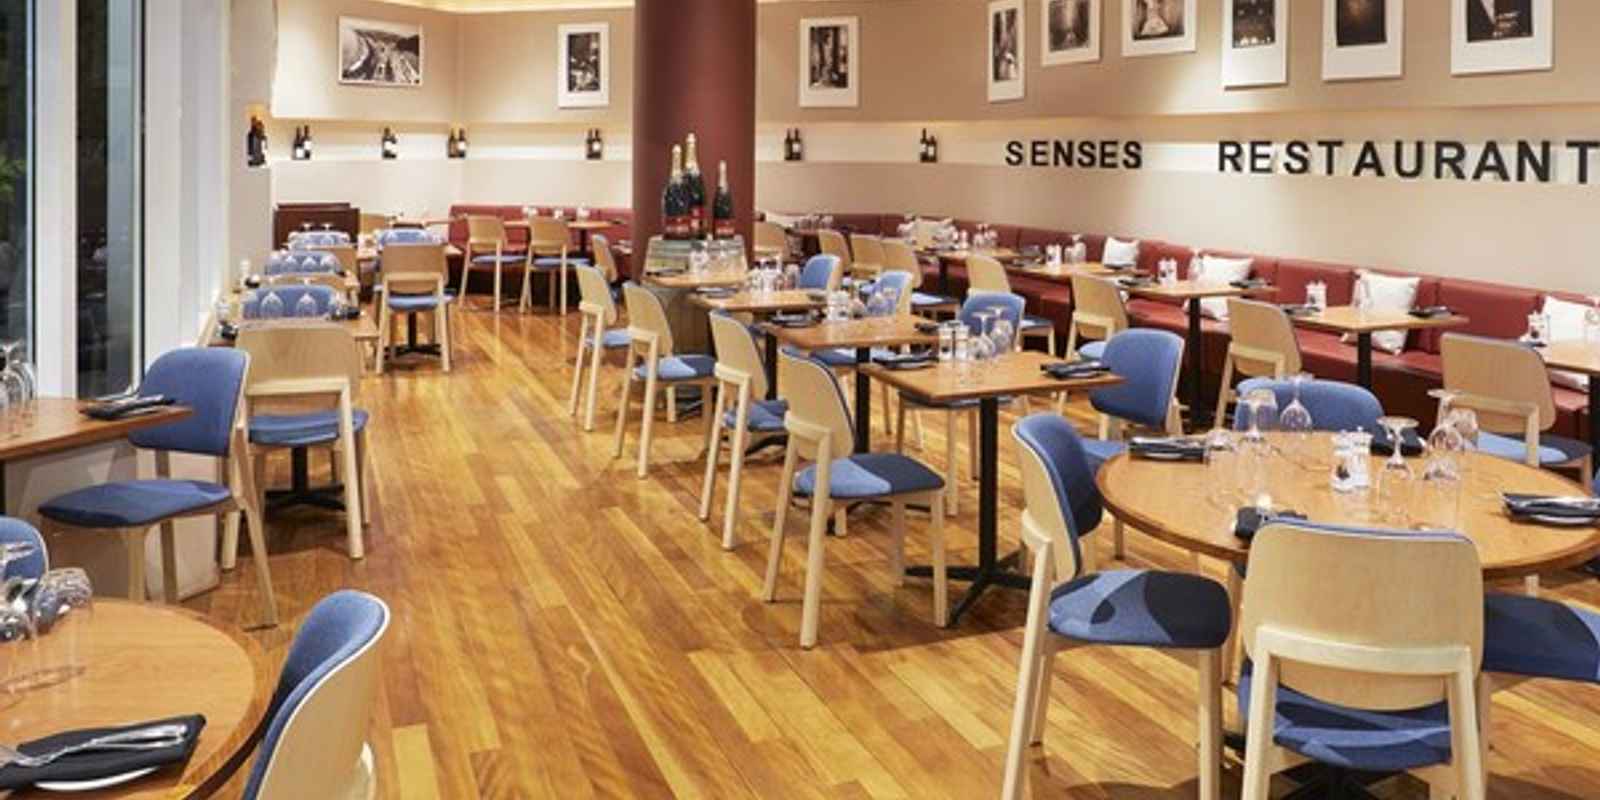 Sen5es Restaurant & Wine Bar